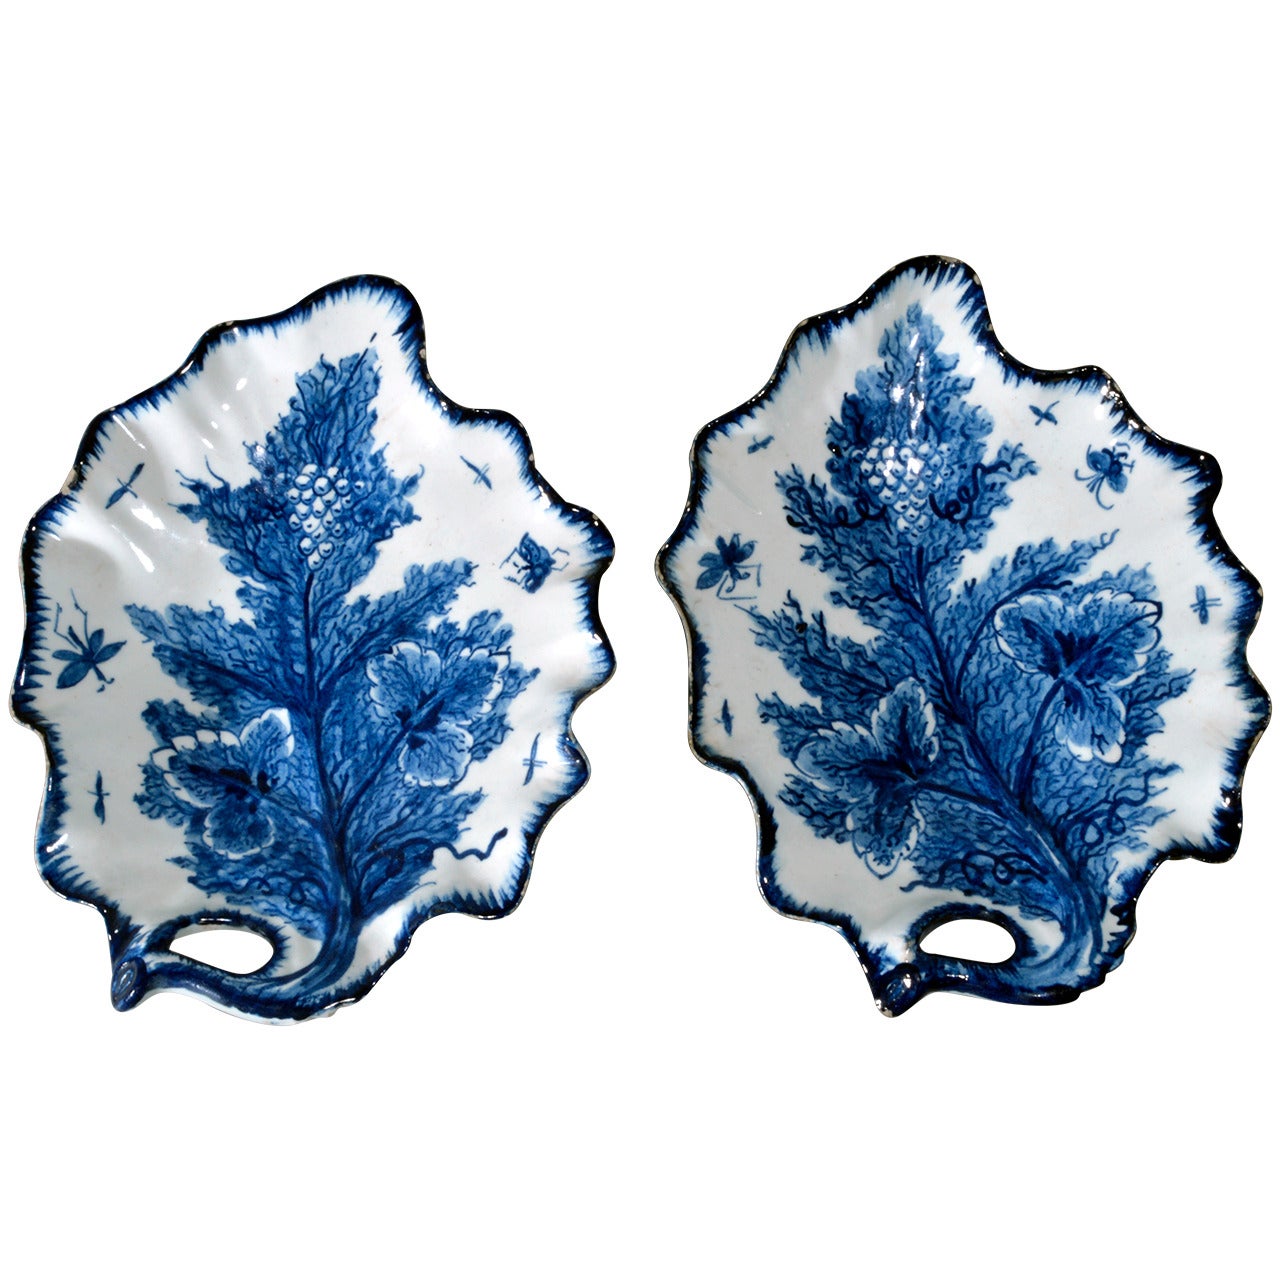 Bow Porcelain Underglaze Blue Trompe L'oeil Leaf Dishes, Circa 1765